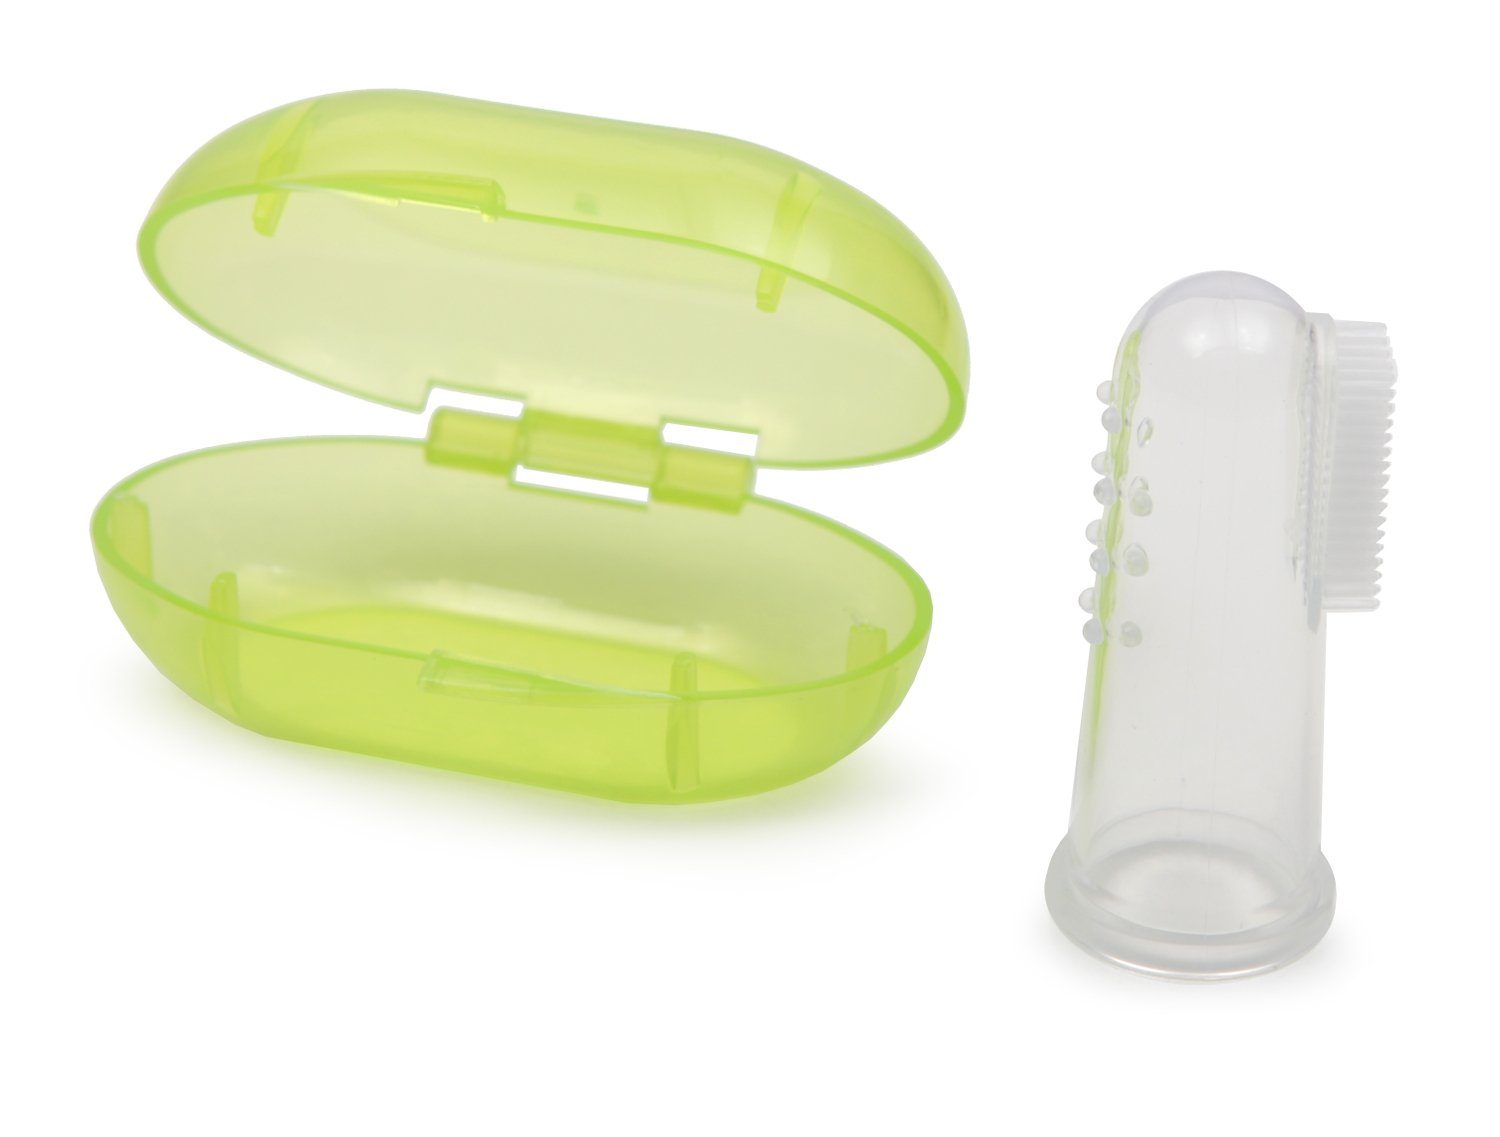 Moni Beißring Silikon Zahnbürste mit Aufbewahrungsbox, mit einer Aufbewahrungsbox für Babys, eine Fingerzahnbürste